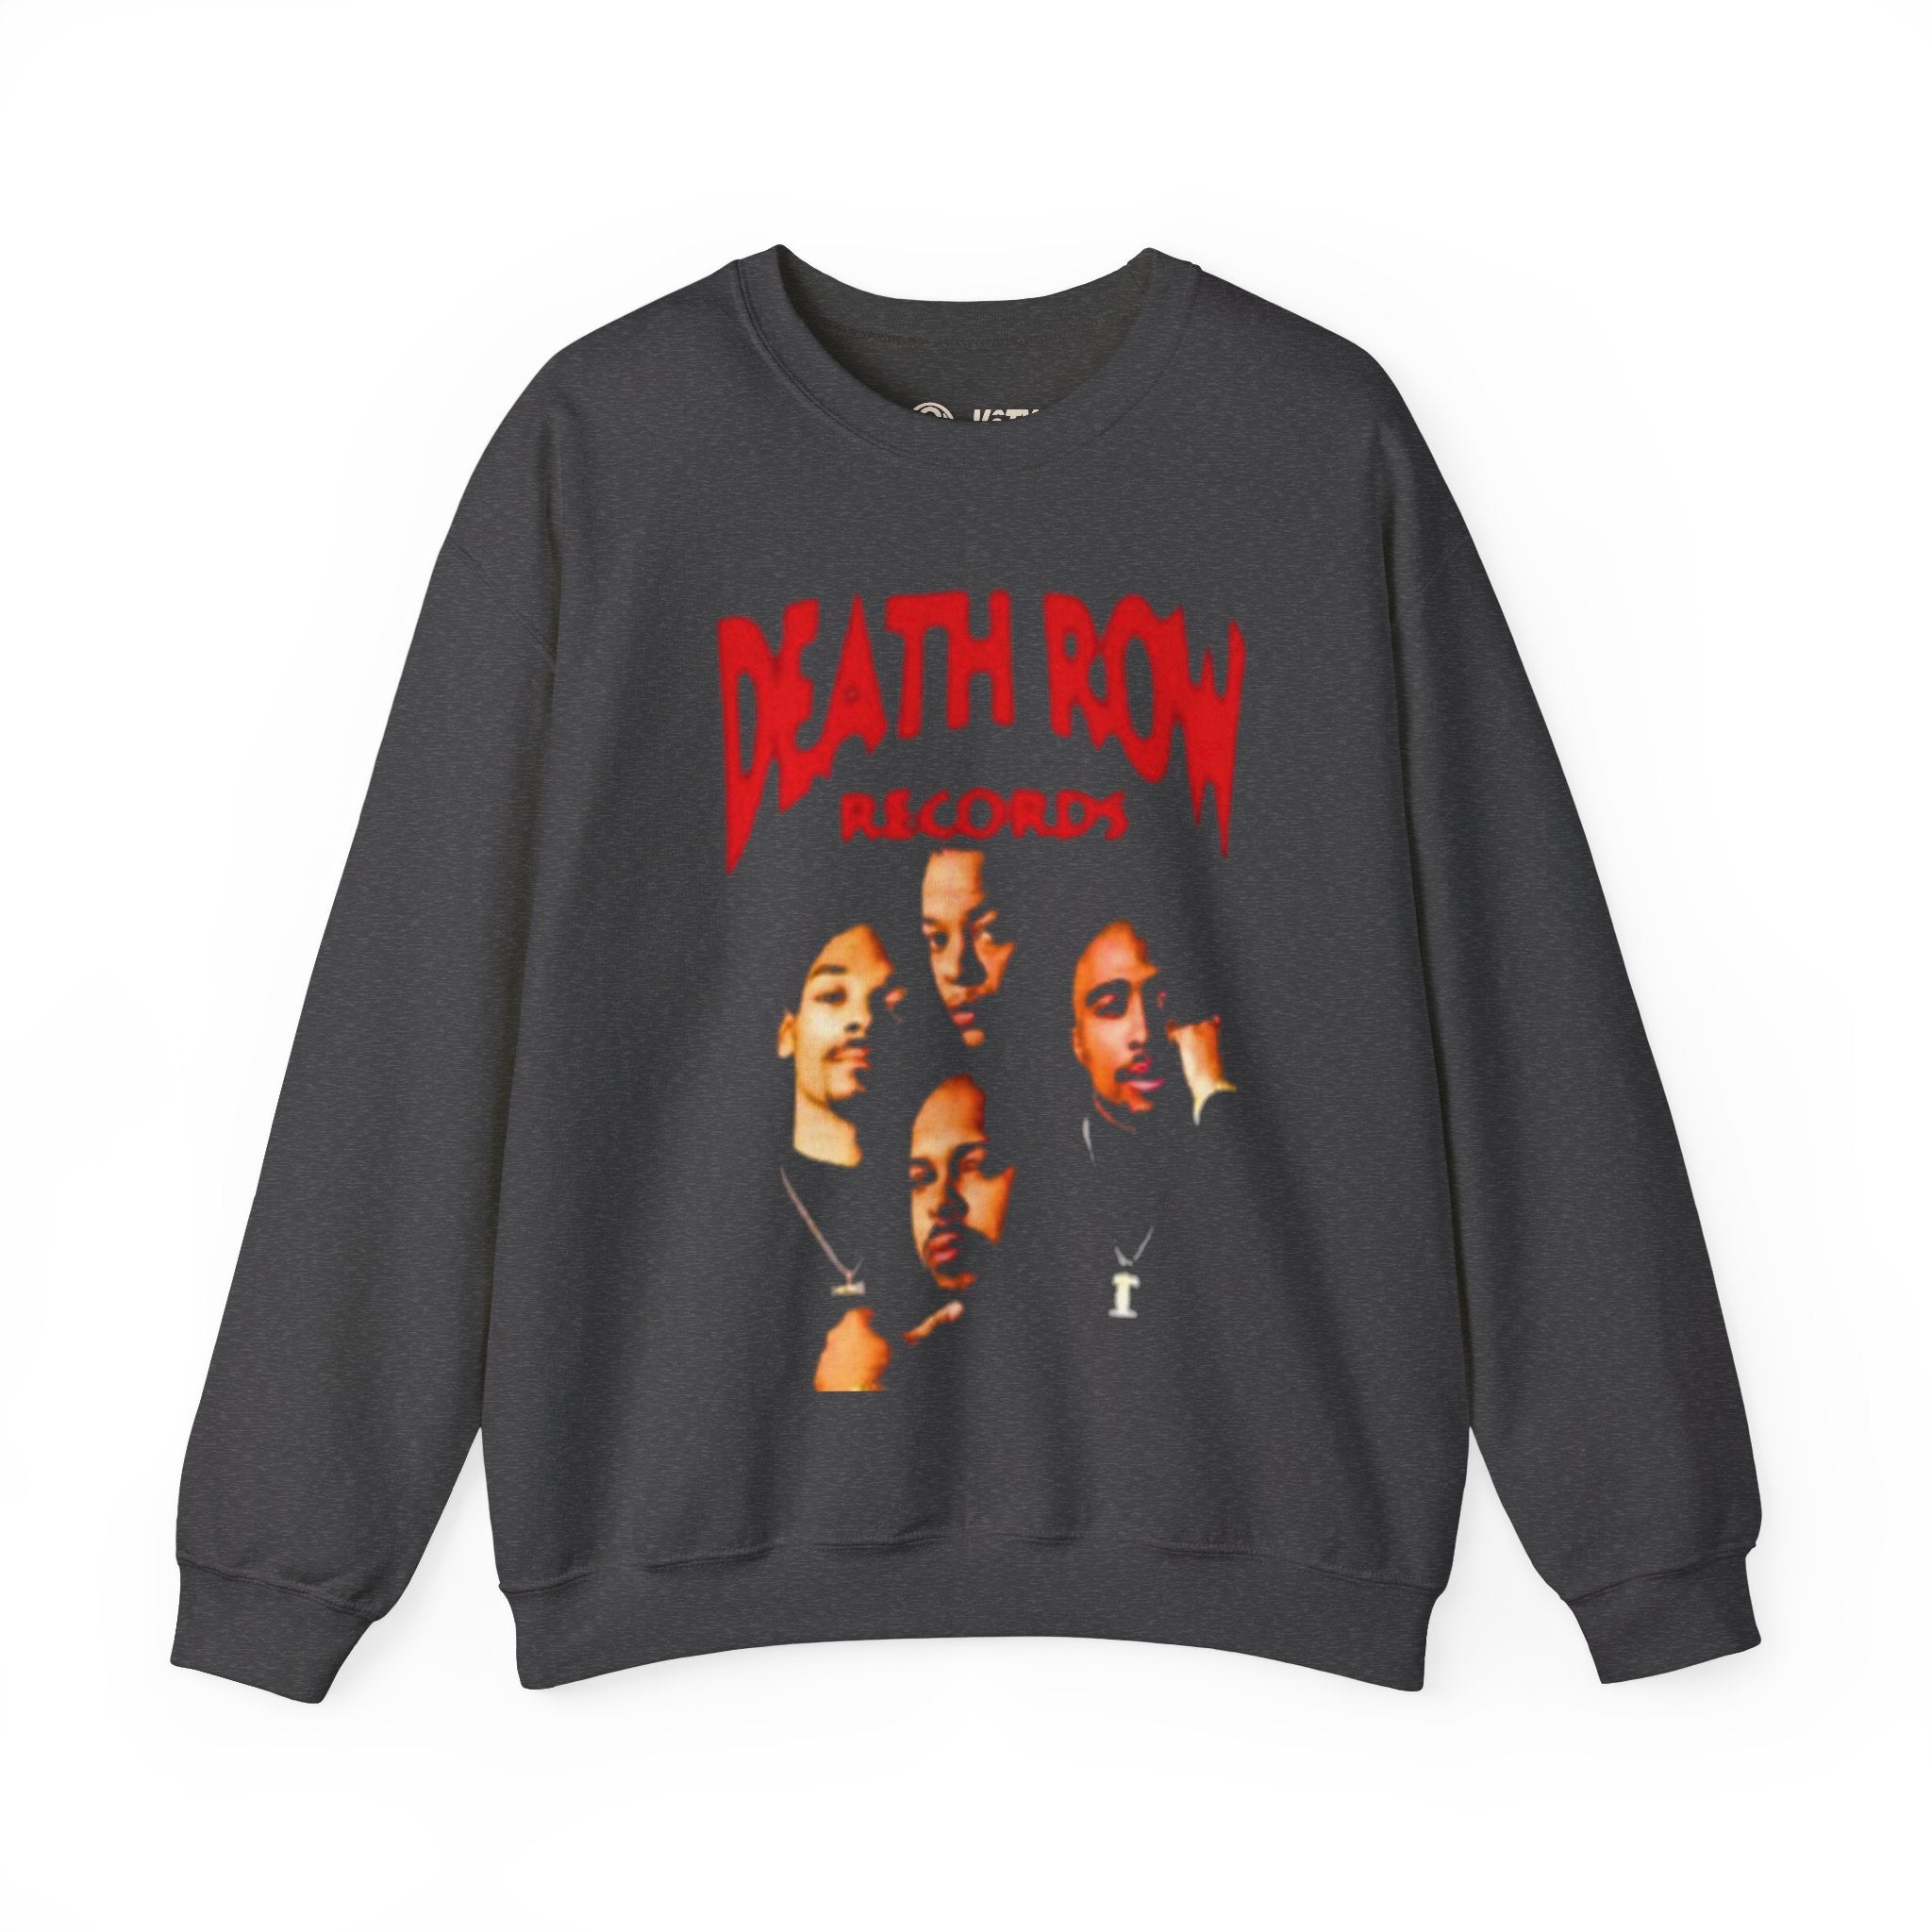 Death Row Sweatshirt